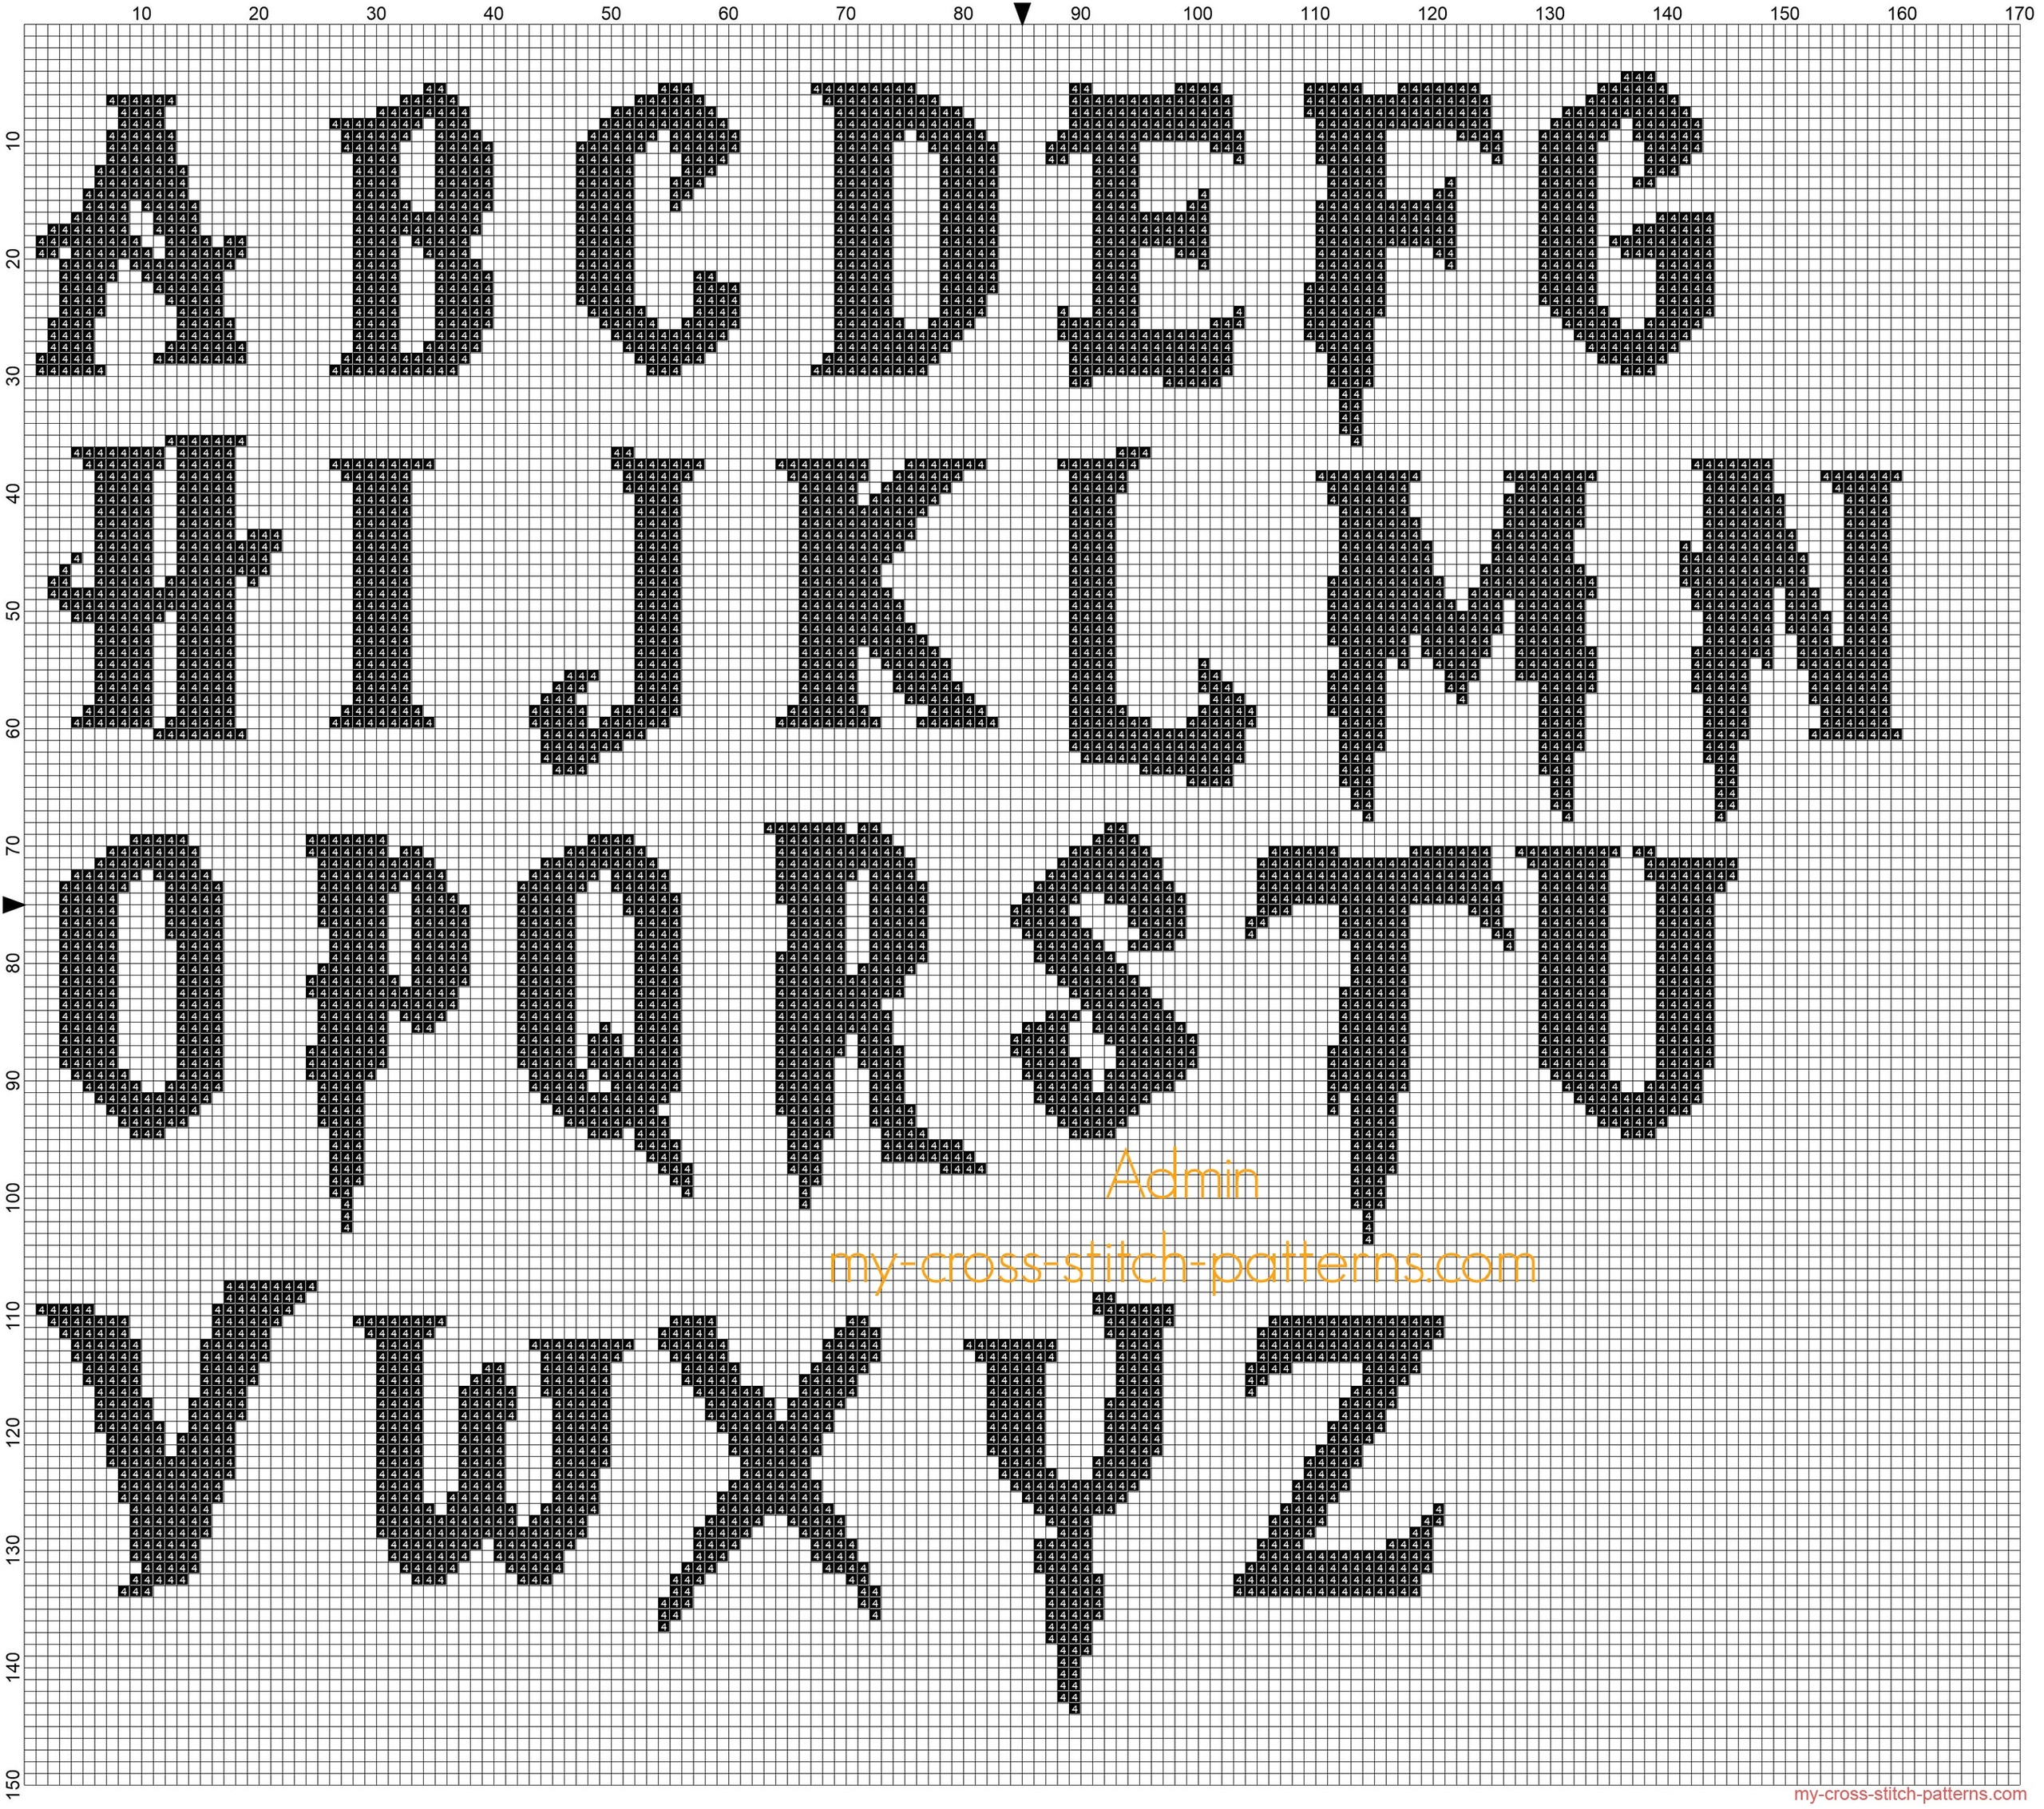 Harry Potter Font Cross Stitch Black Alphabet Free Cross Stitch Patterns Simple Unique Alphabets Baby